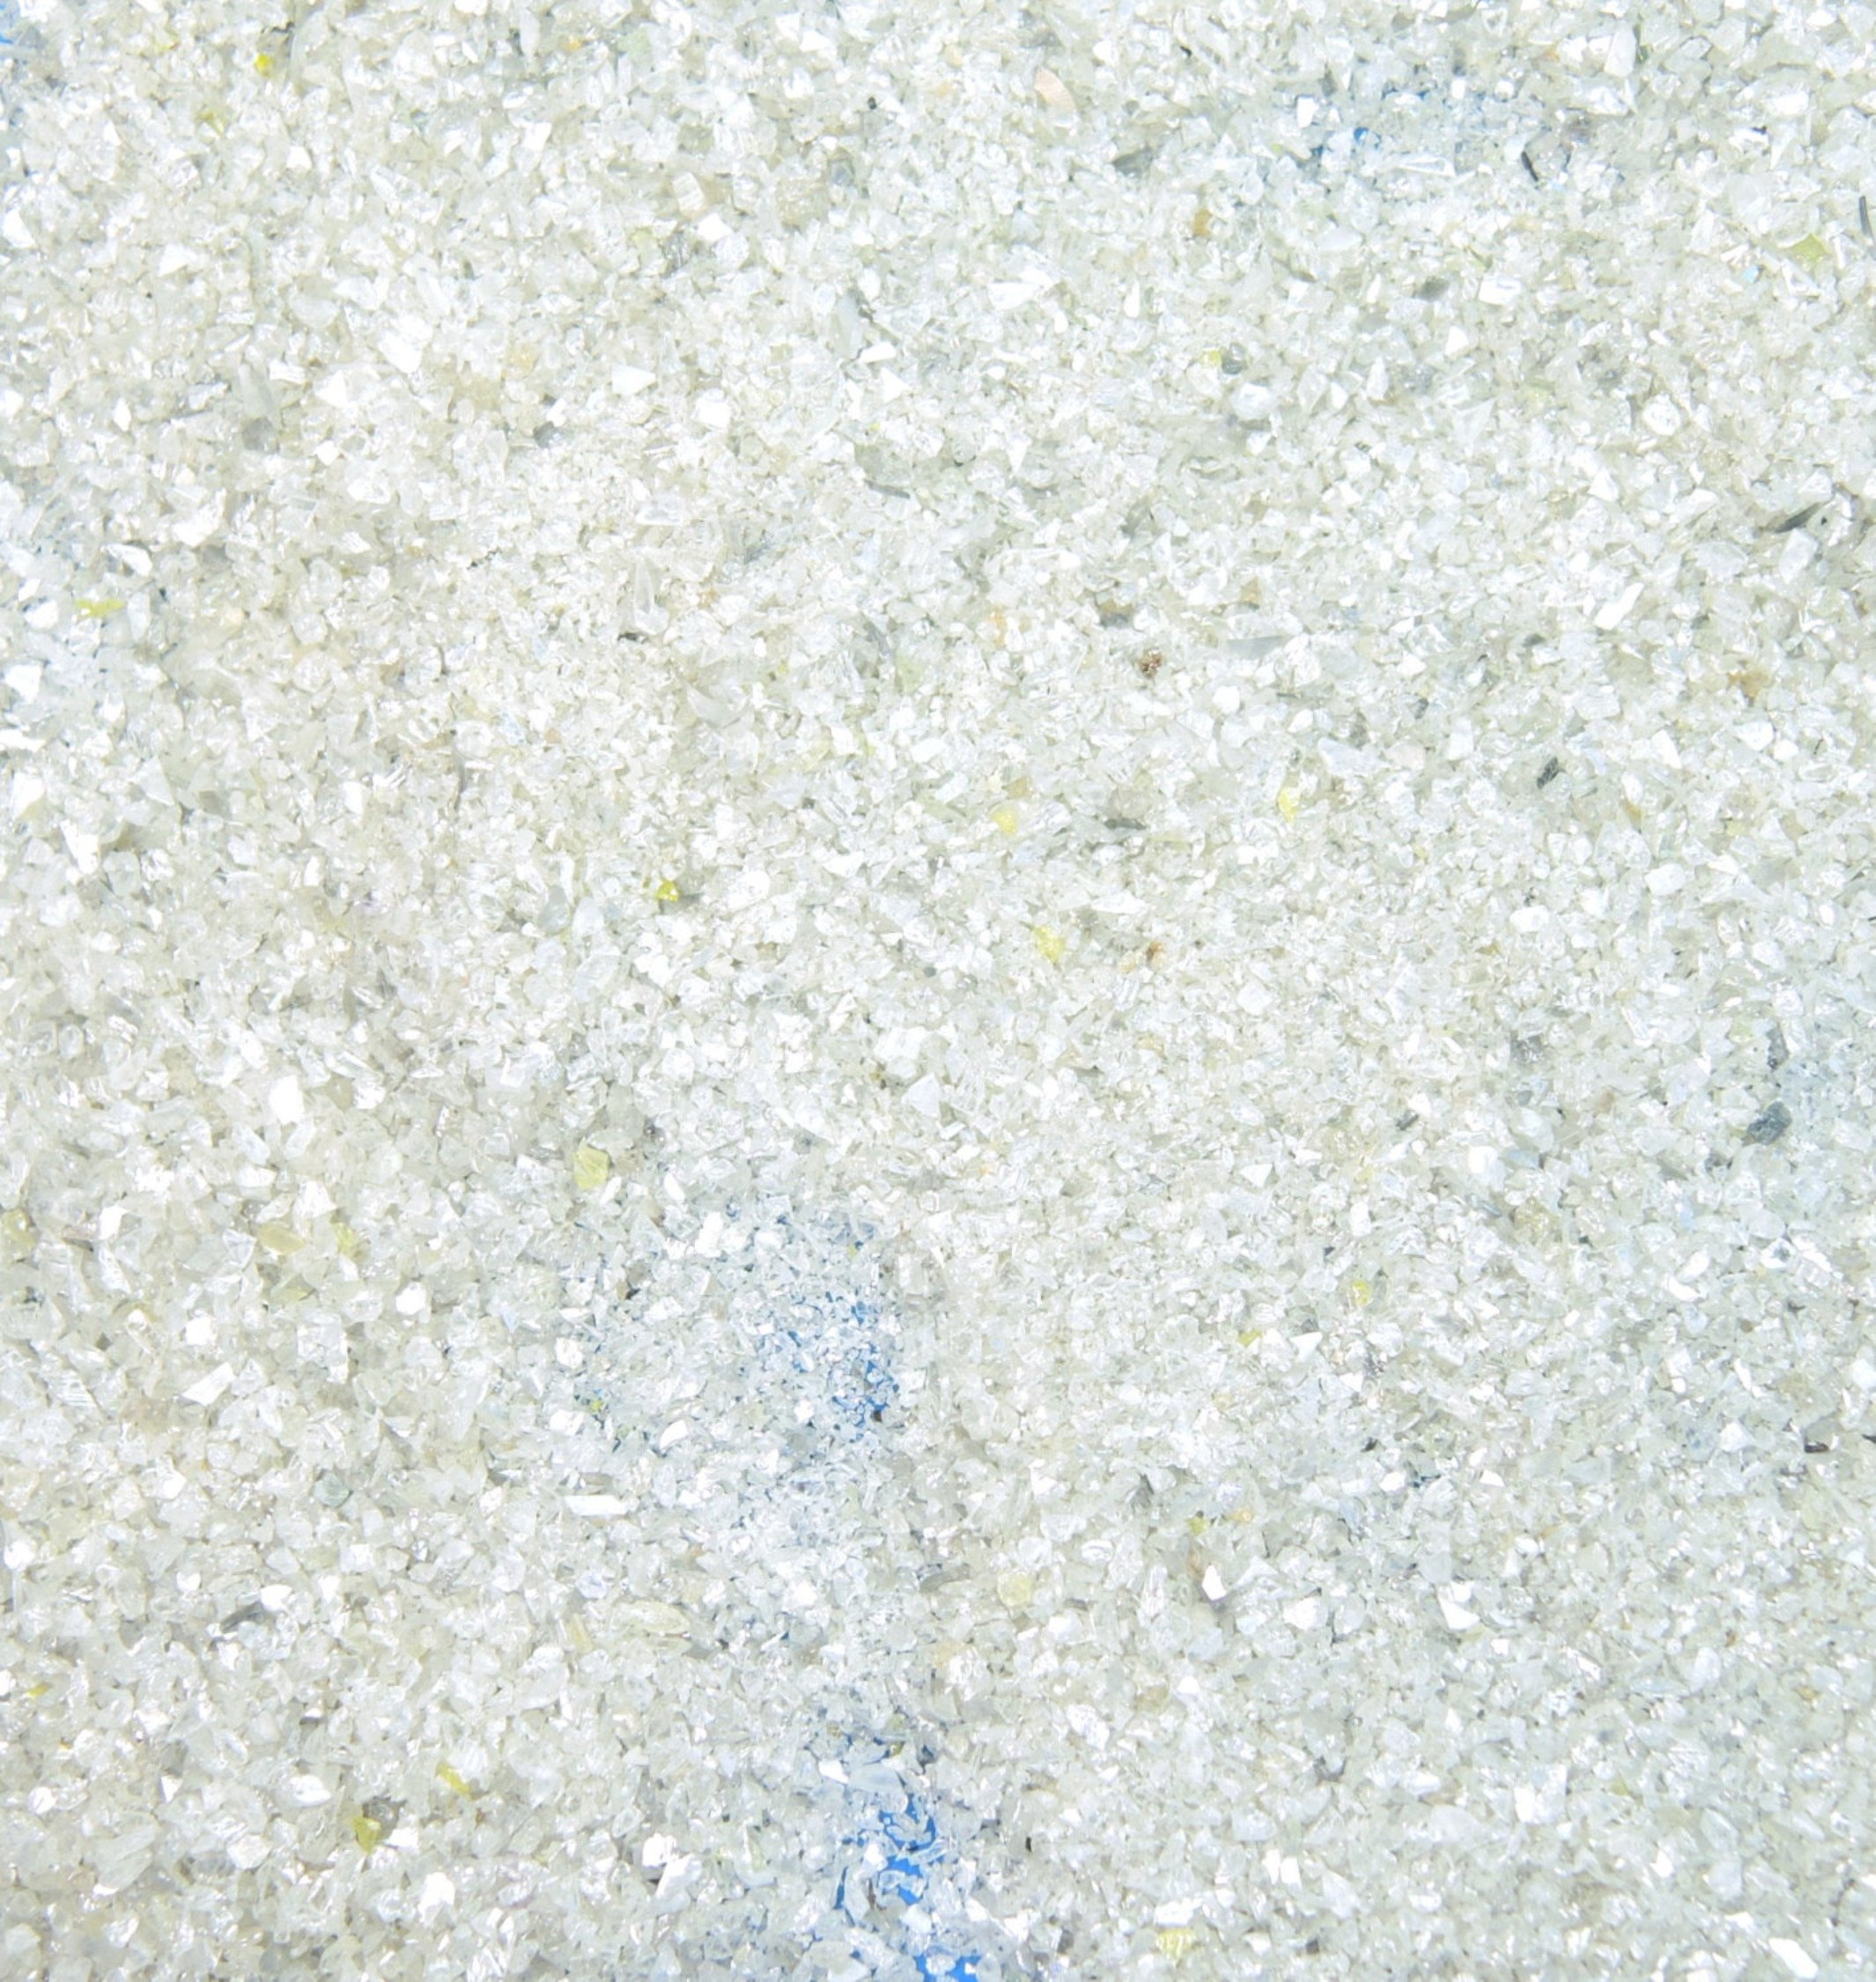 Natural Loose Diamond Rough Dust Powder Shape White Color 10.00 Ct Lot Q136-1